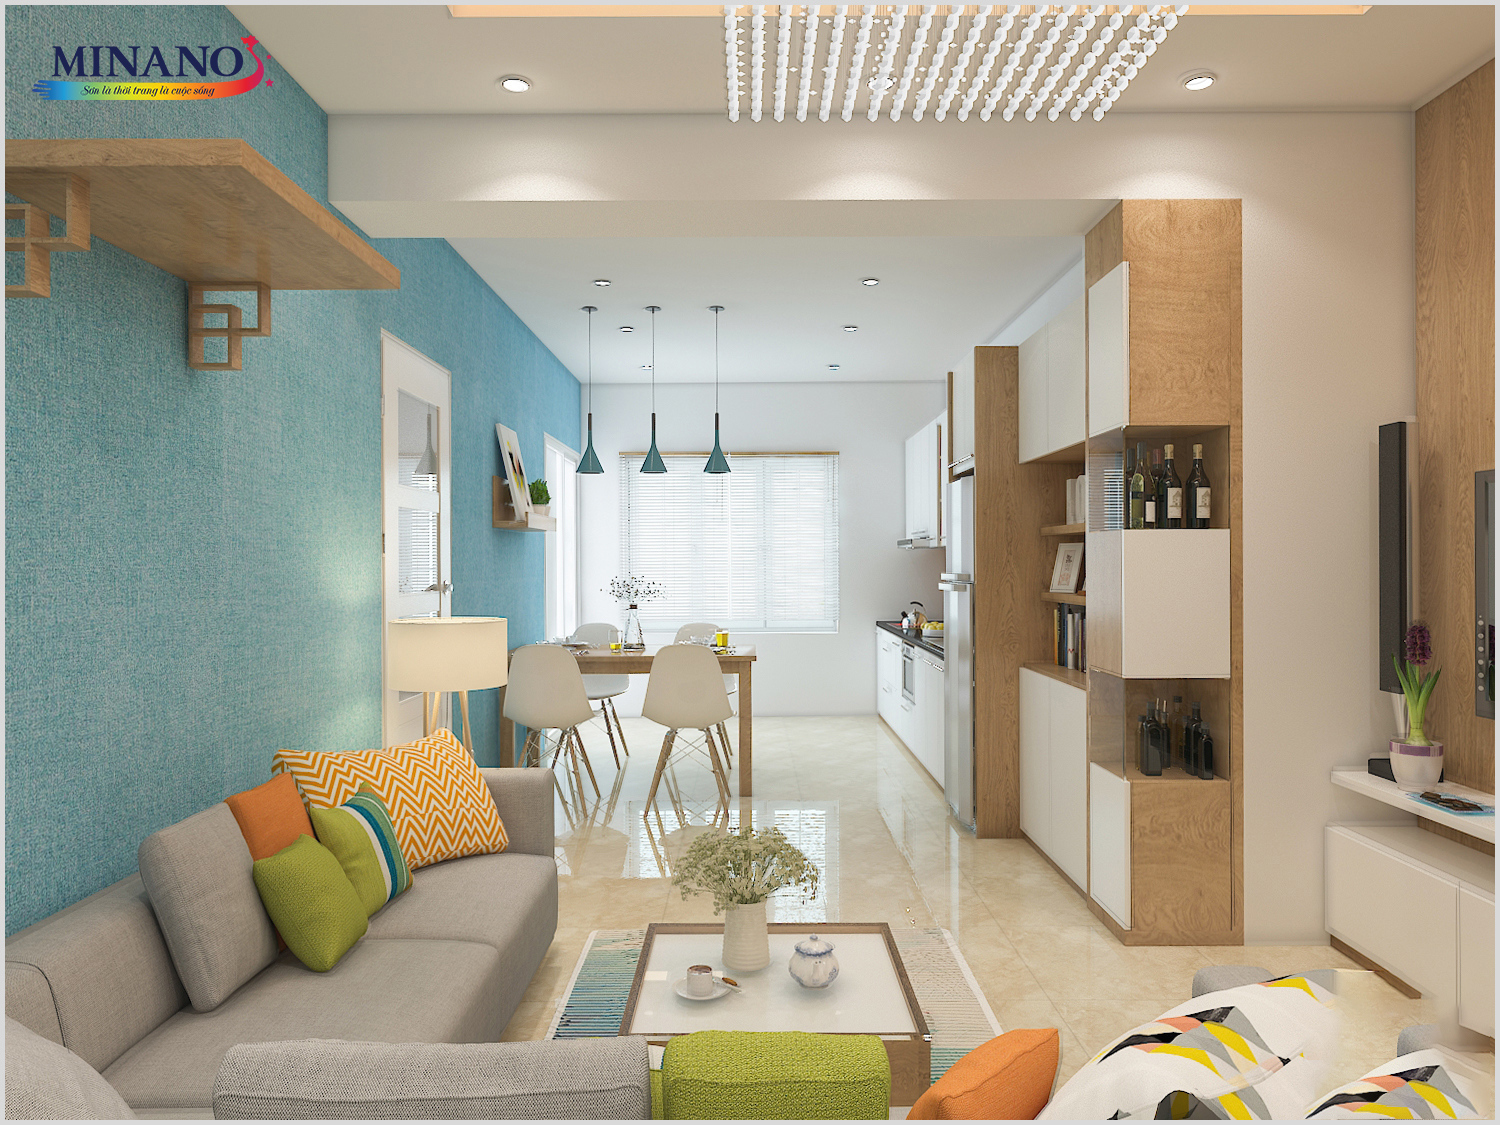 Phòng khách mang đậm chất tự nhiên và thanh lịch với tường xanh và tường trắng. Tone màu xanh dương nhẹ nhàng tạo cảm giác thư thái, trong khi tone màu trắng làm tôn lên vẻ sáng sủa và trang nhã